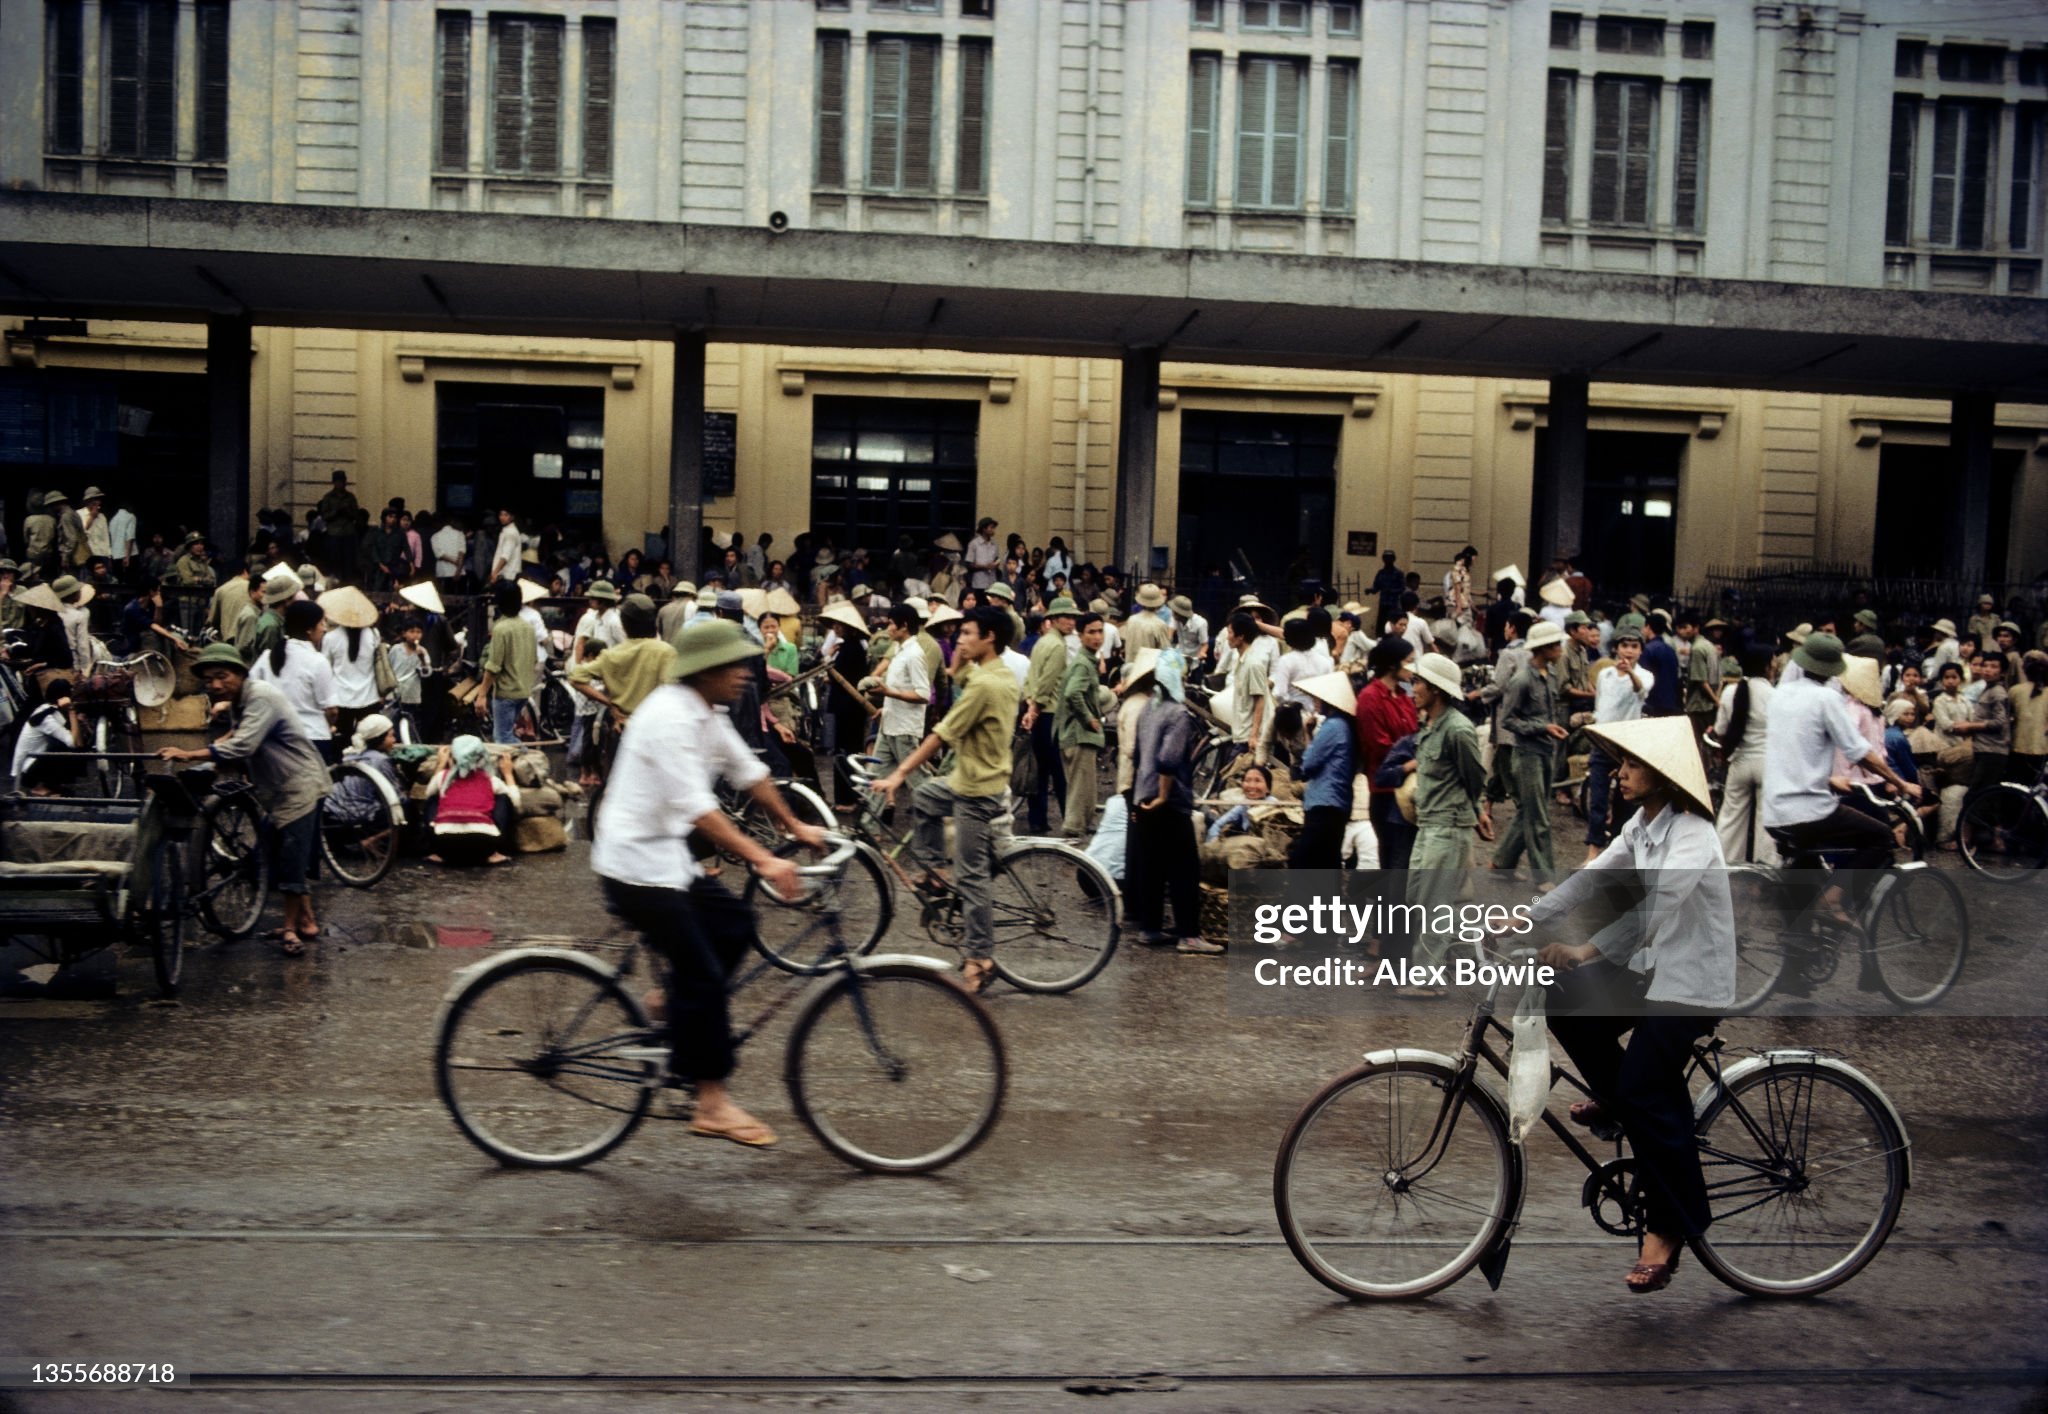 Chùm ảnh: Việt Nam năm 1984 qua ống kính của Alex Bowie